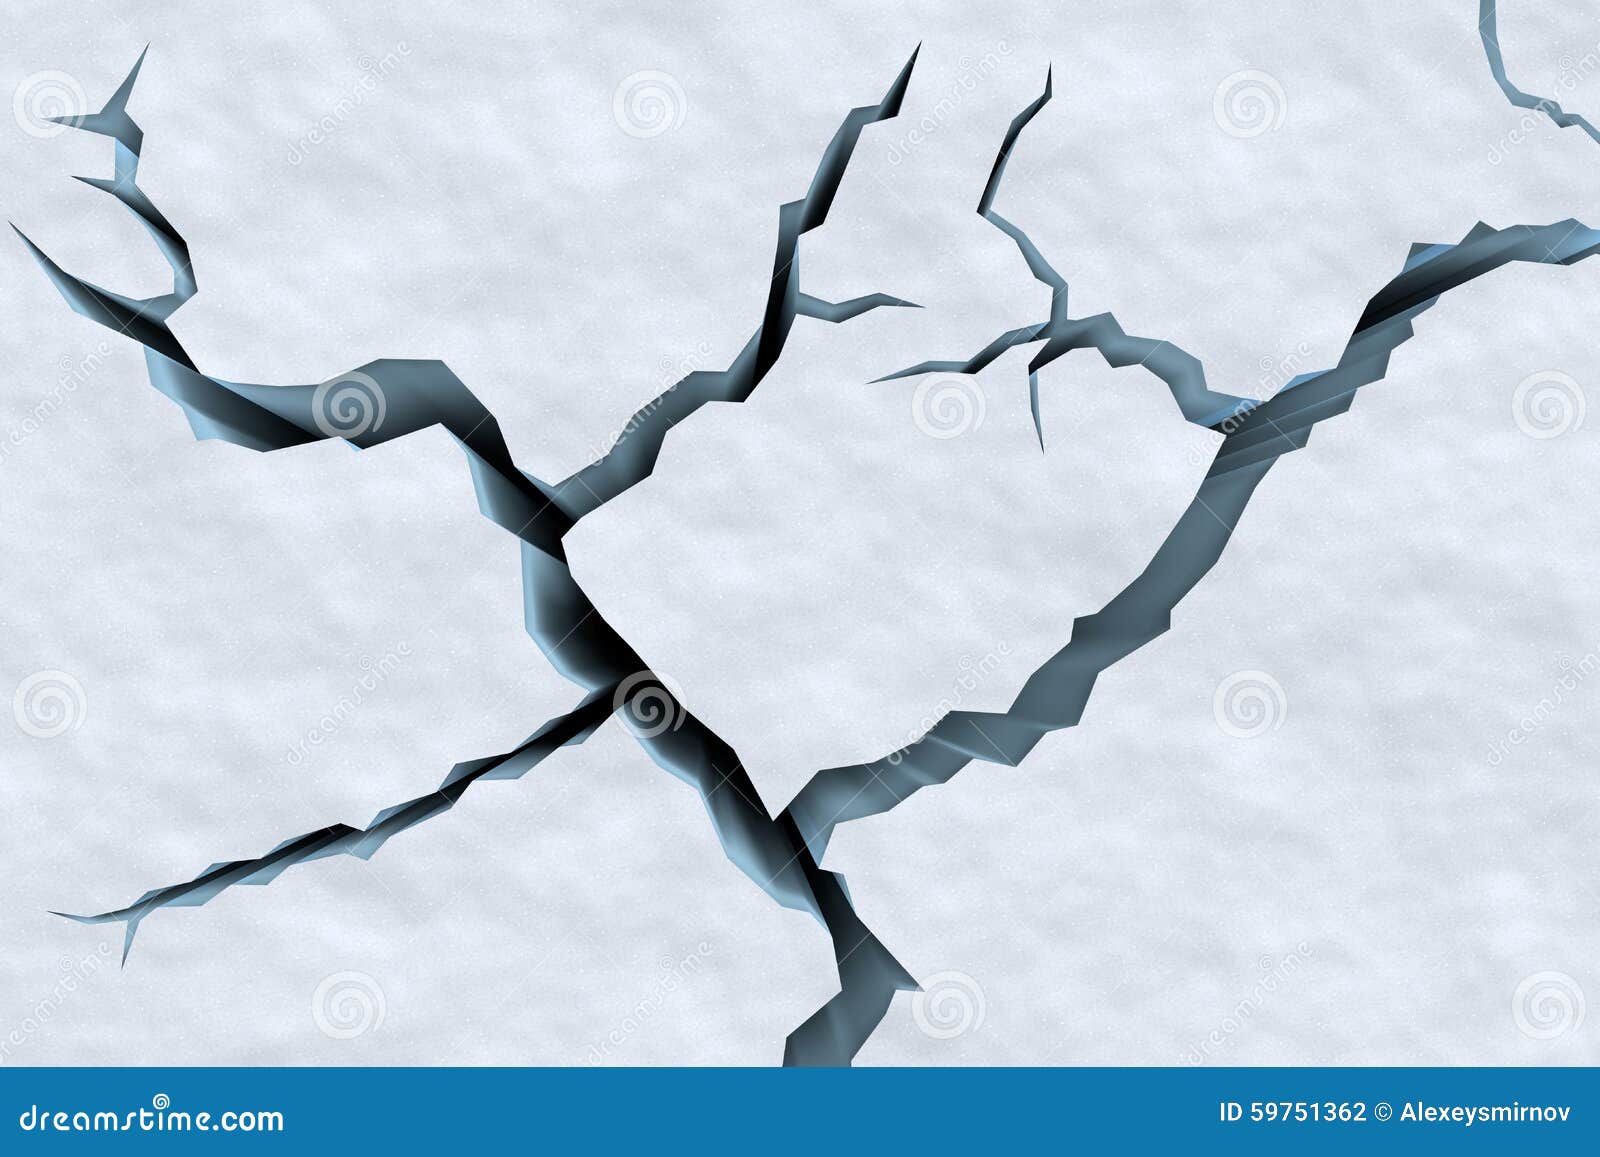 Трещина река. Трещины на снегу. Трещины на льду. Трещины нарисованные. Трафарет трещины.